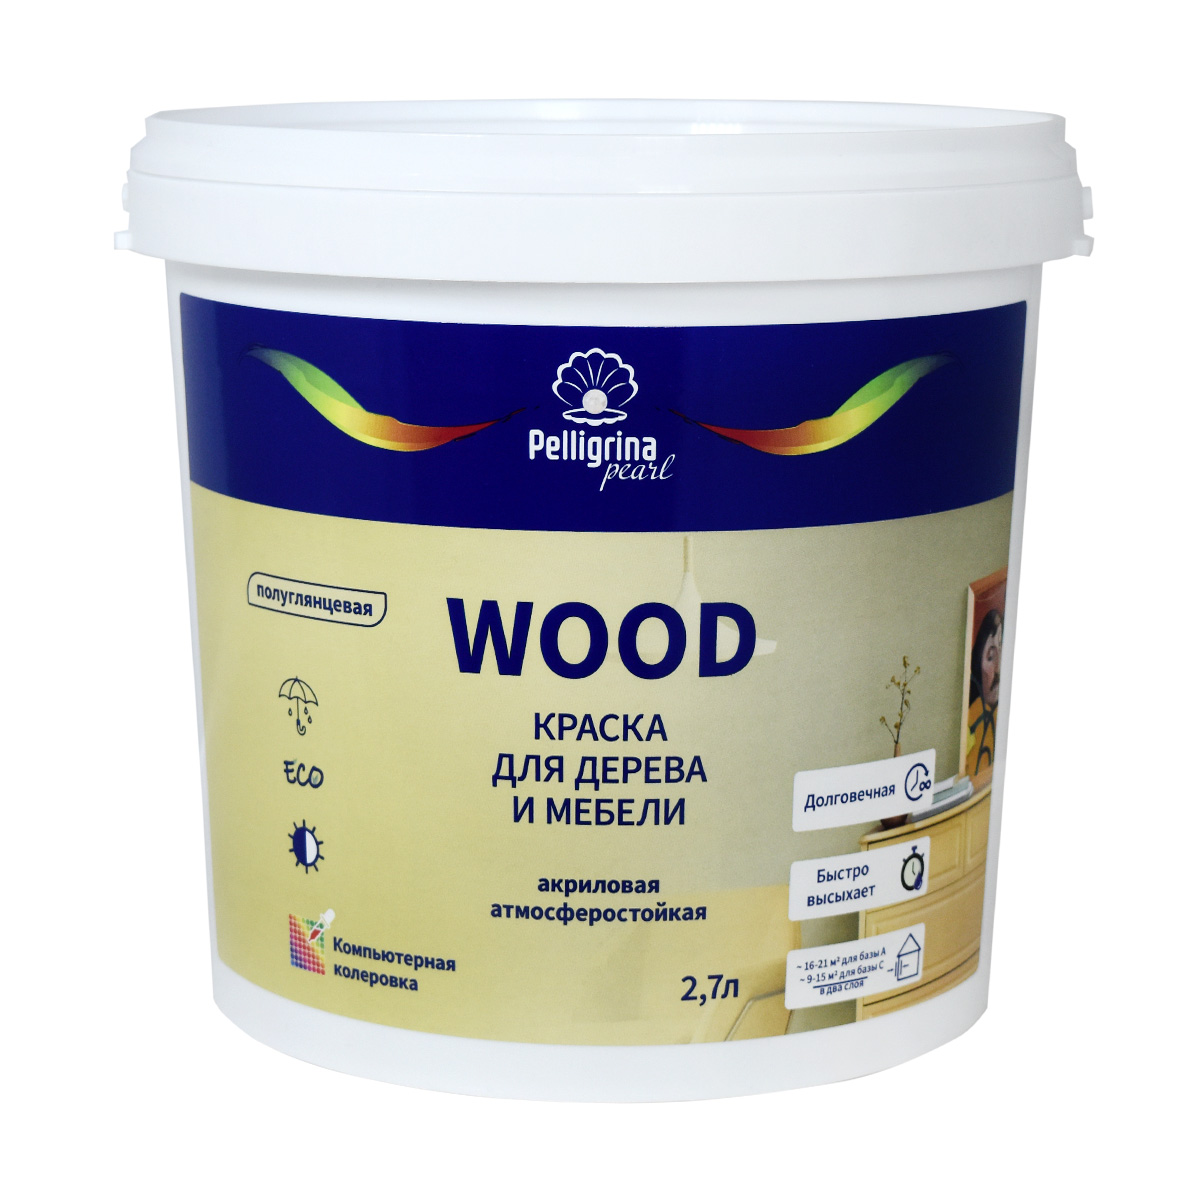 Краска для дерева и мебели Pelligrina Pearl Wood, акриловая, база С, бесцветная, 2,7 л профессиональная смывка для краски с дерева telakka wood 13 кг